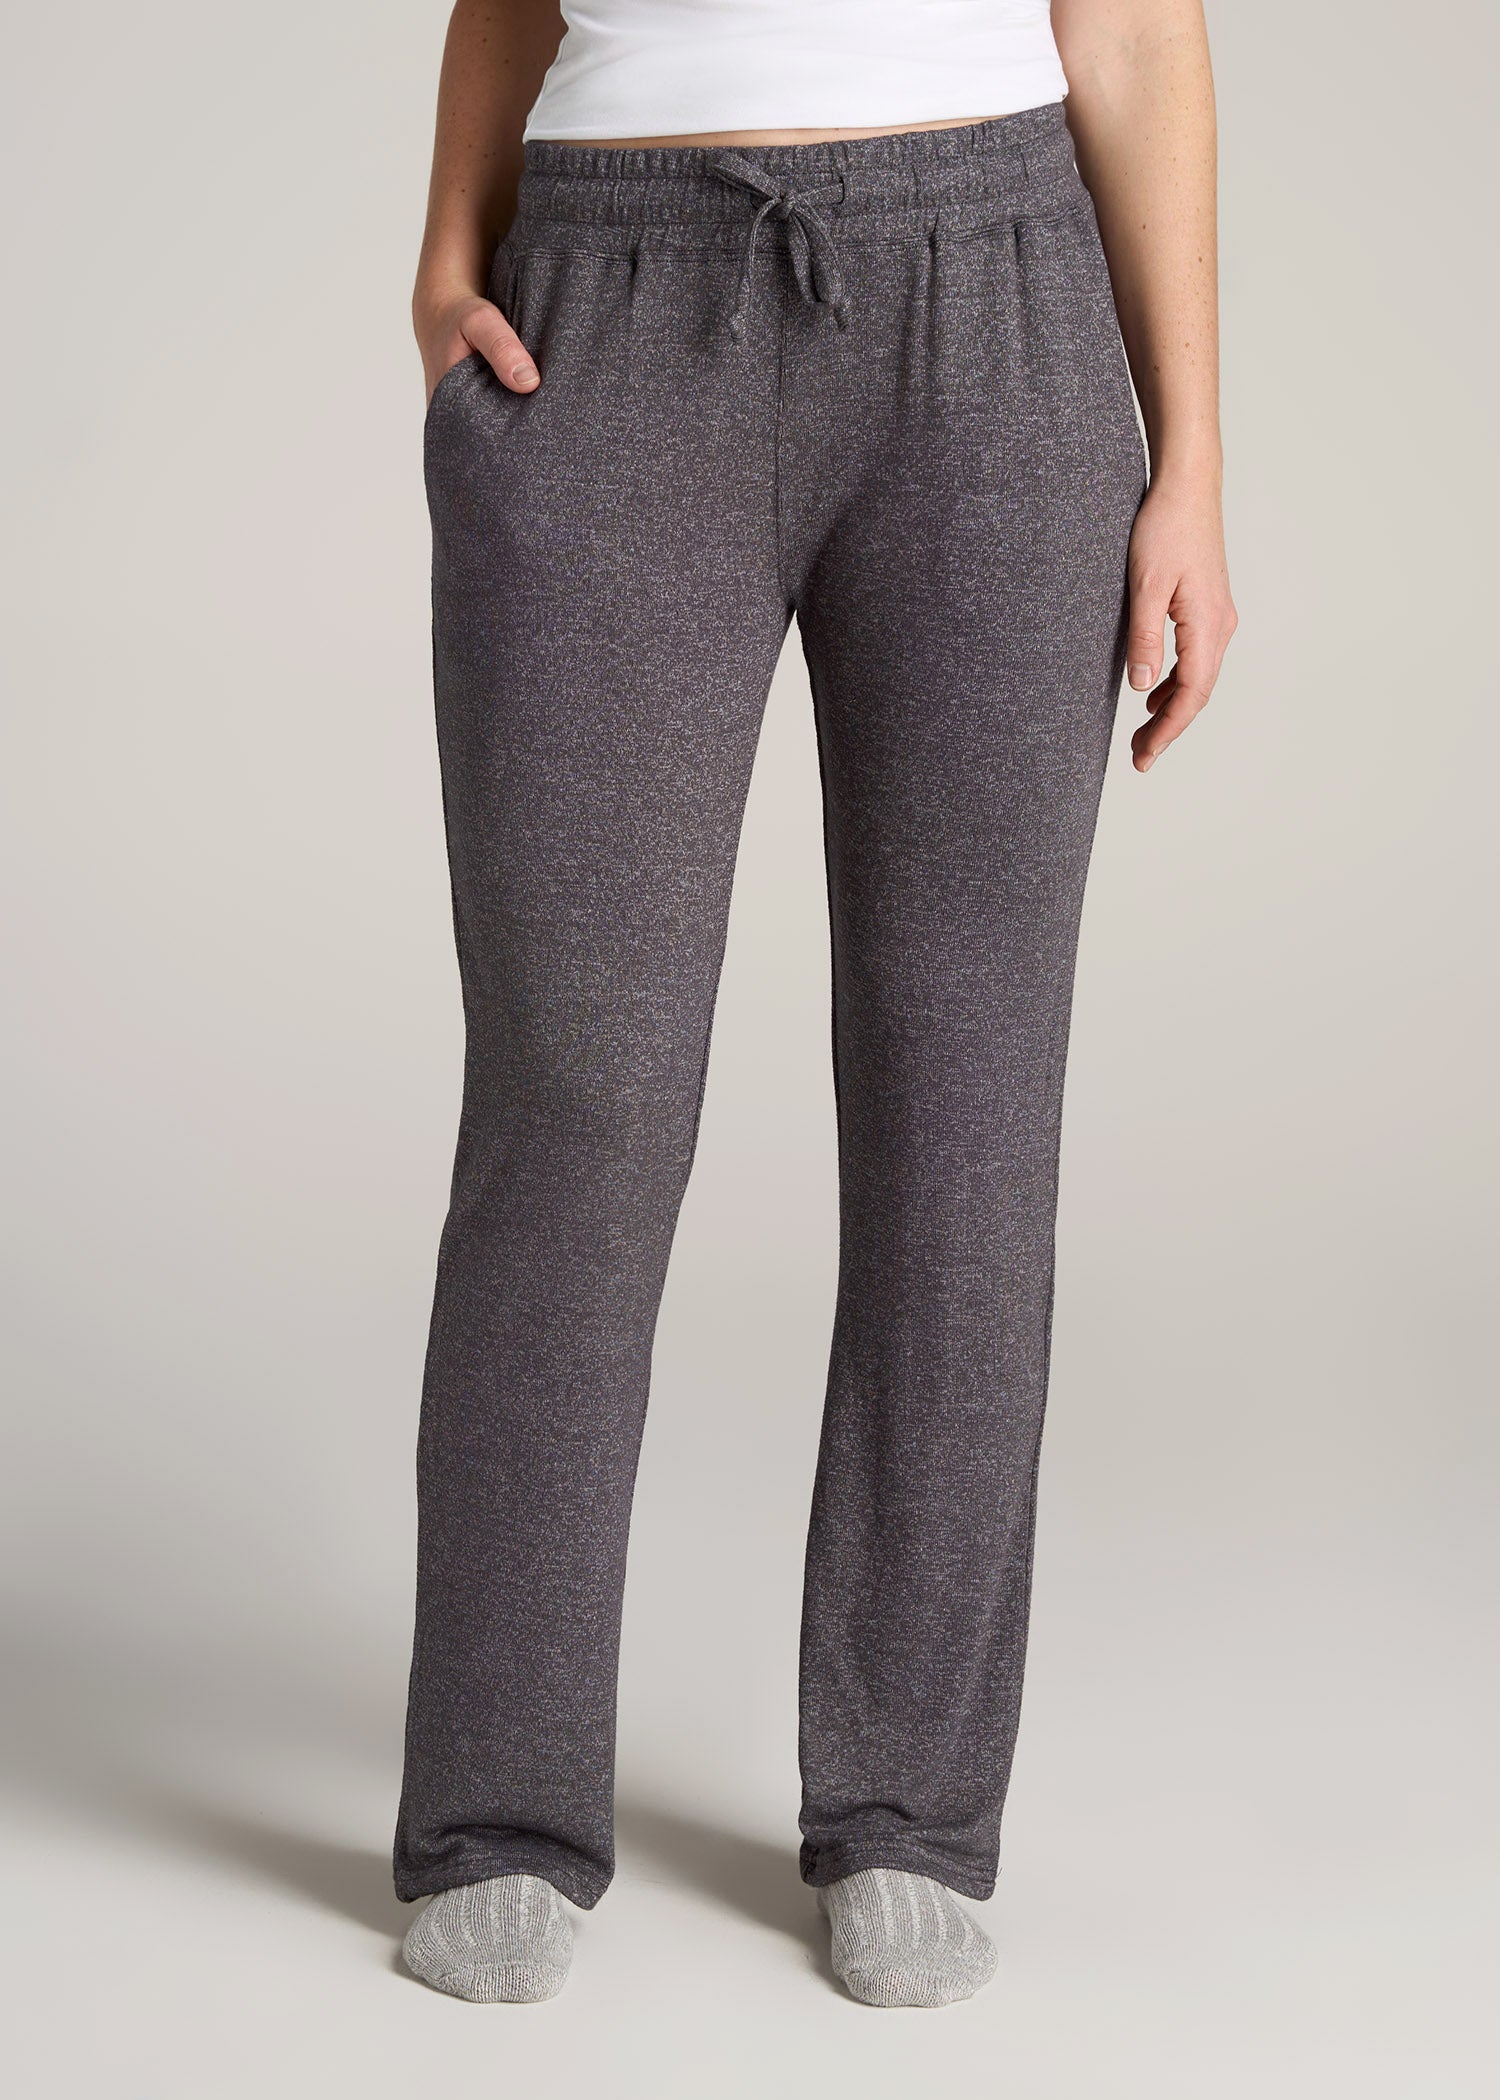 Women's Fleece Pajamas: Shop Cute & Cozy Sleepwear